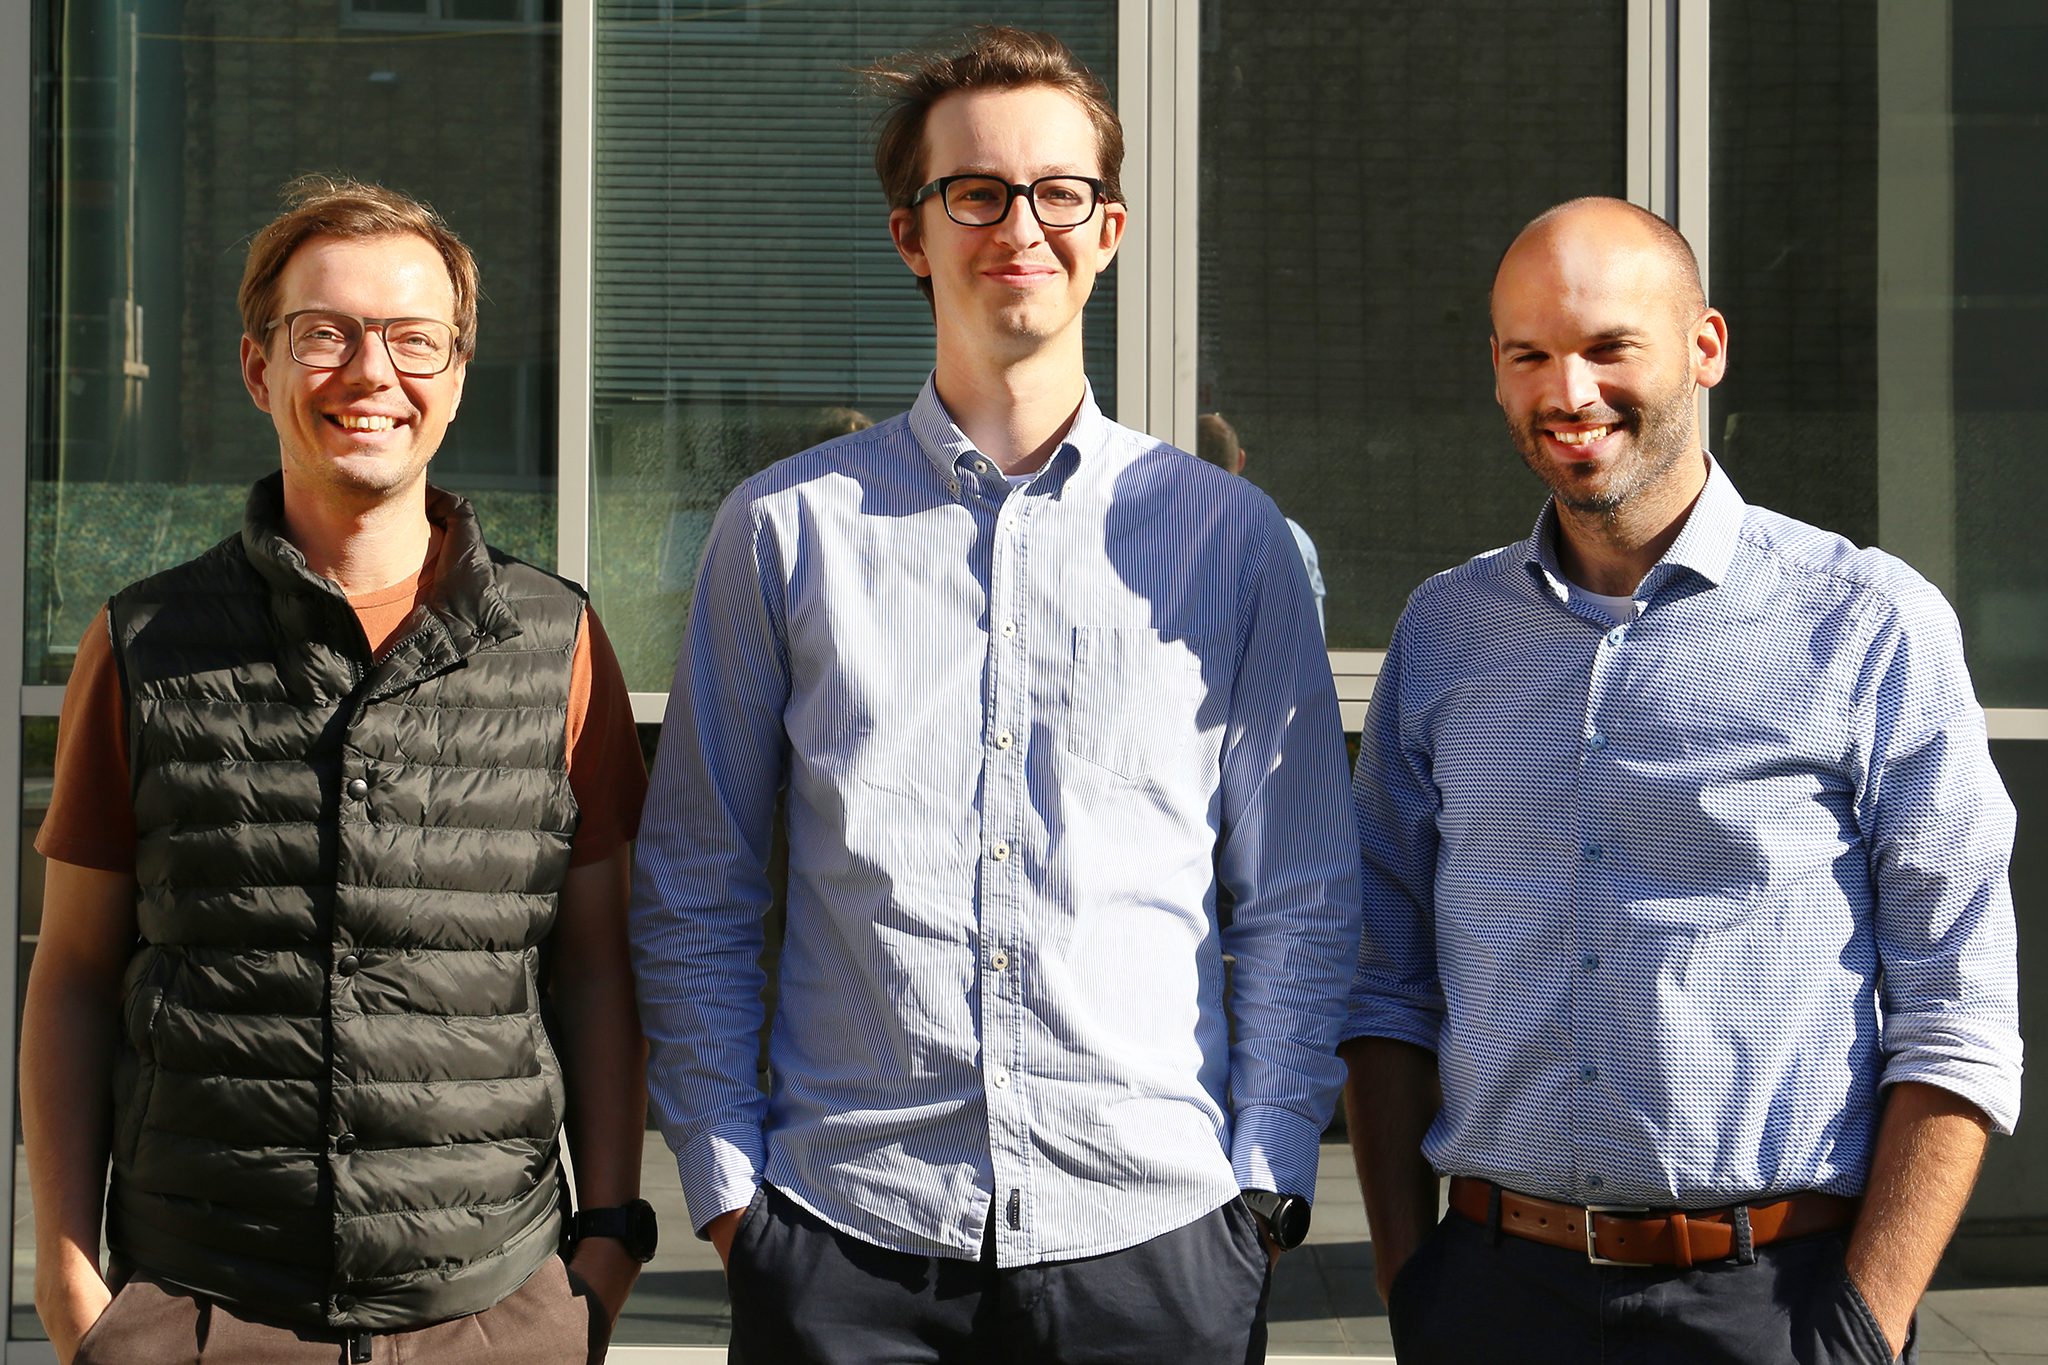 Helmut Riedl-Tragenreif, Lukas Zauner and Rainer Hahn. Photo courtesy of TU Wien.